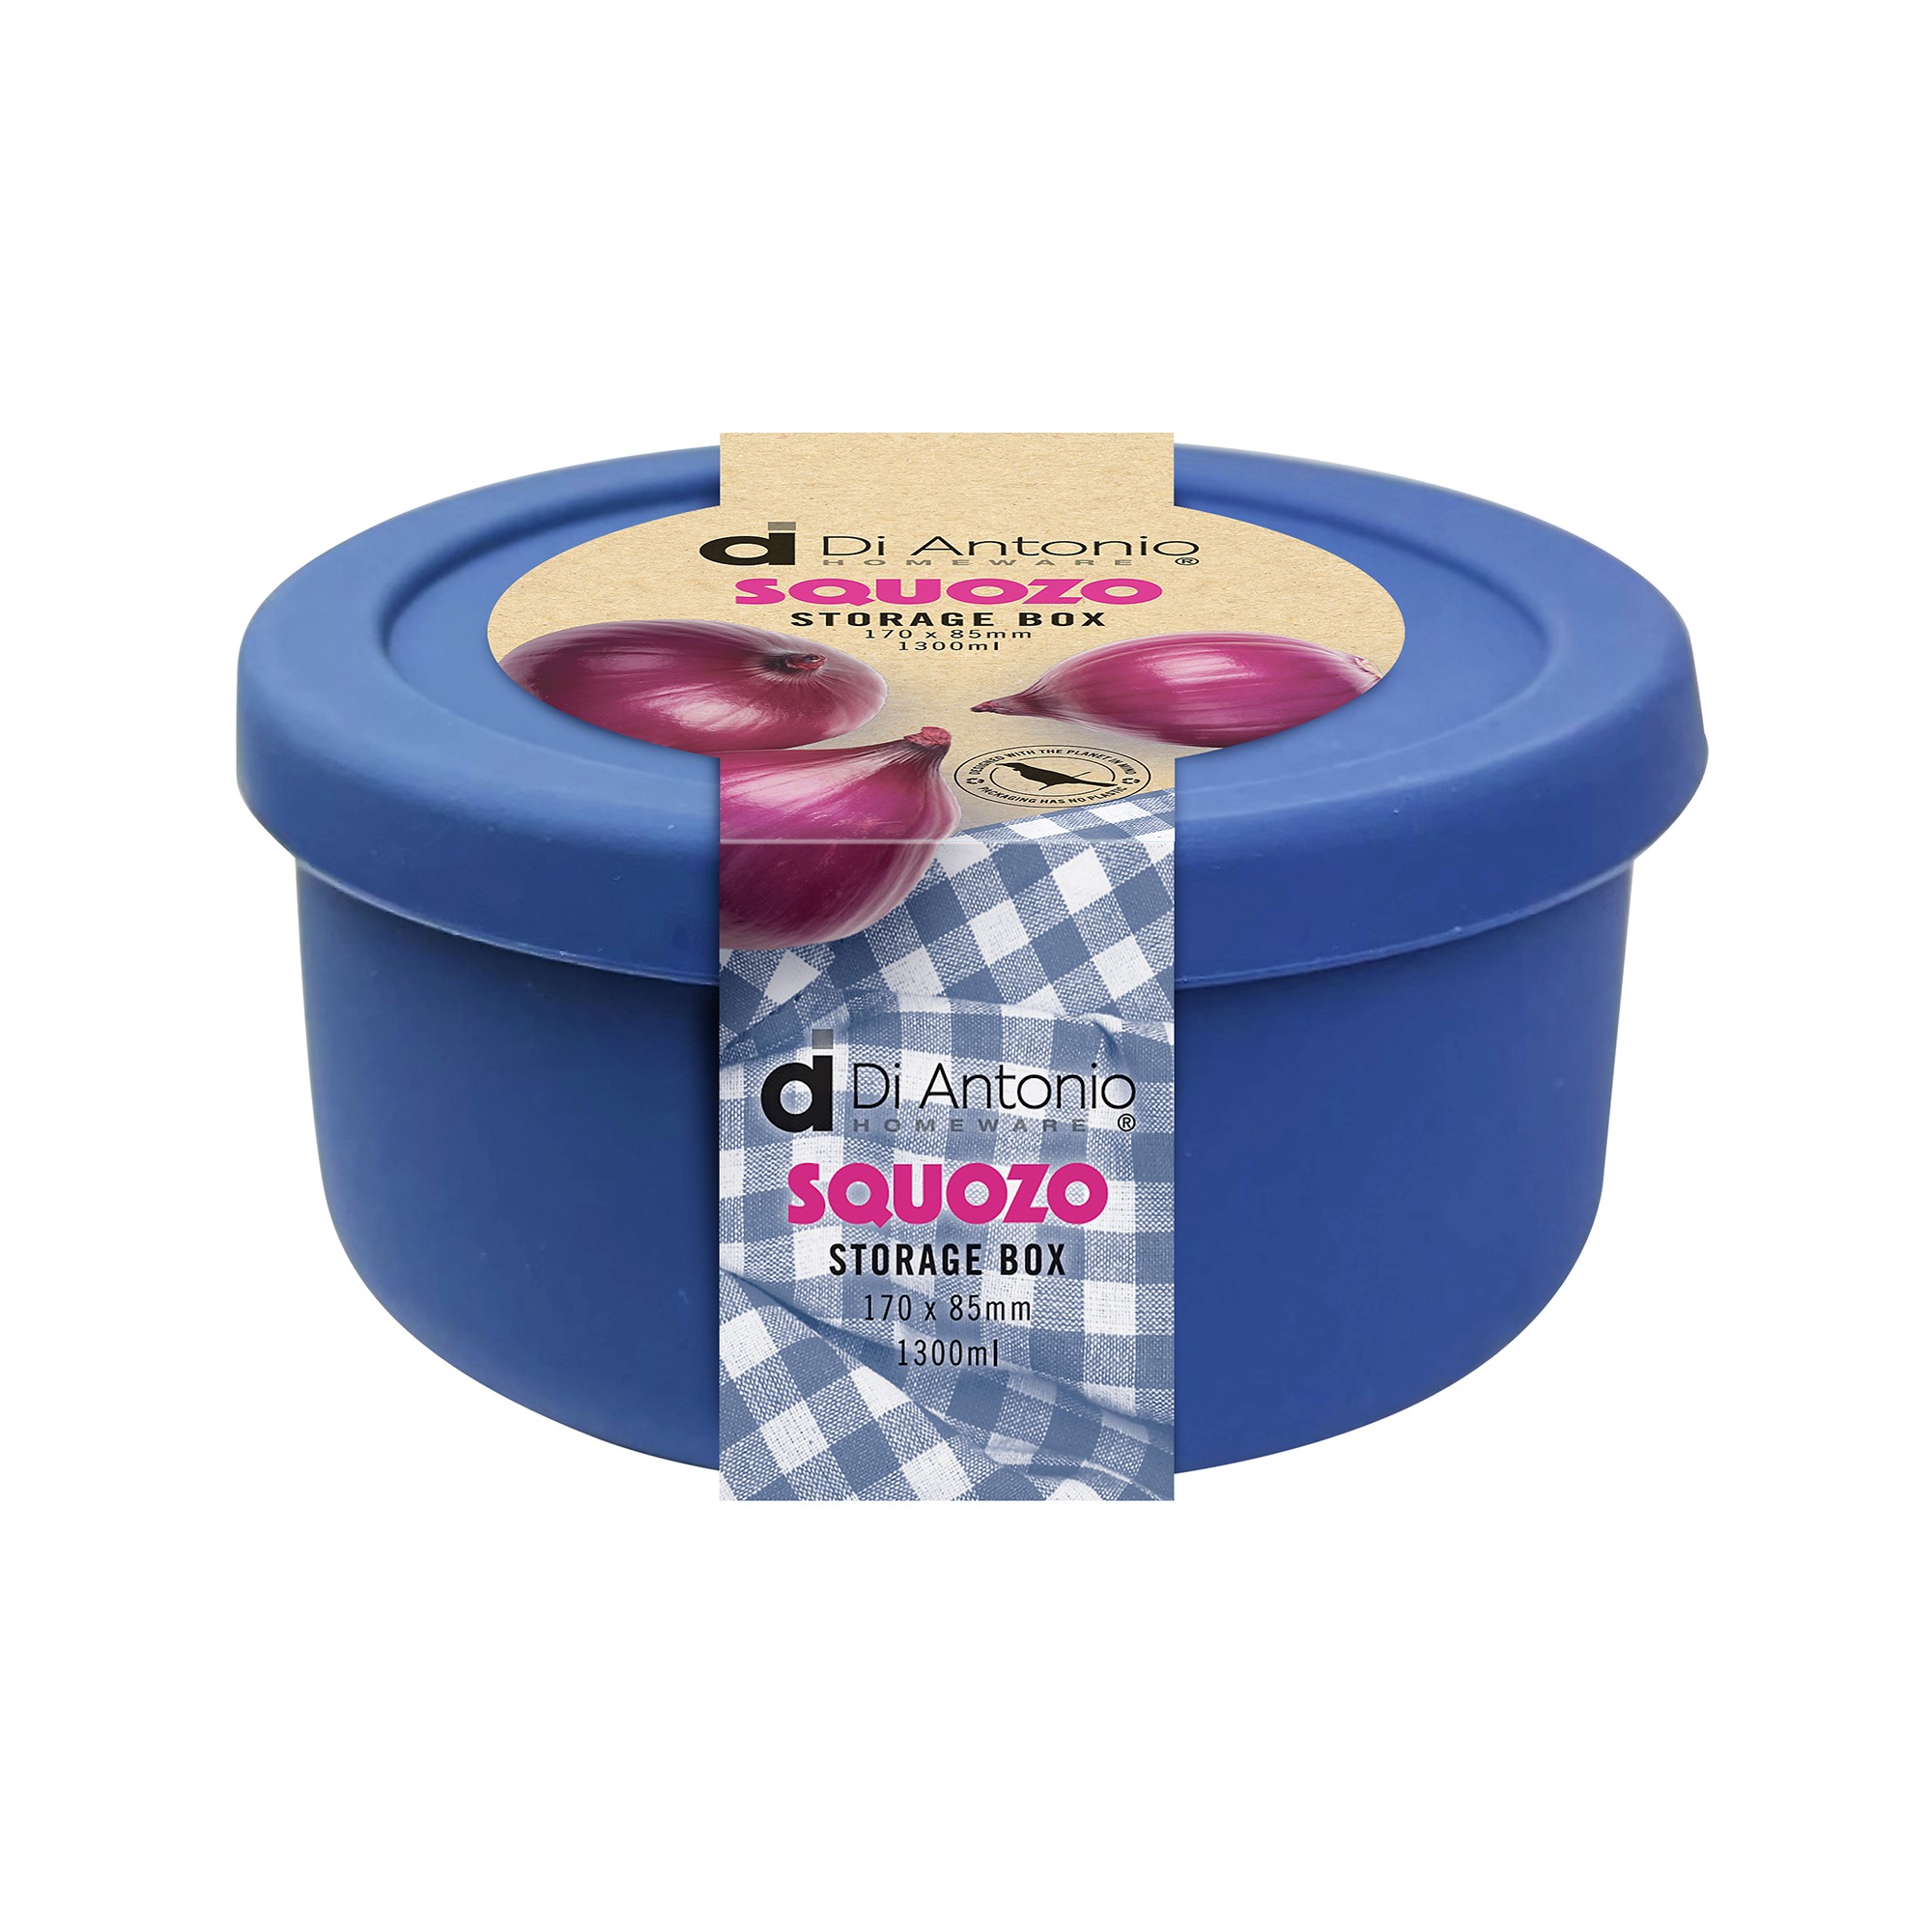 Squozo | Heading Image | Product Category